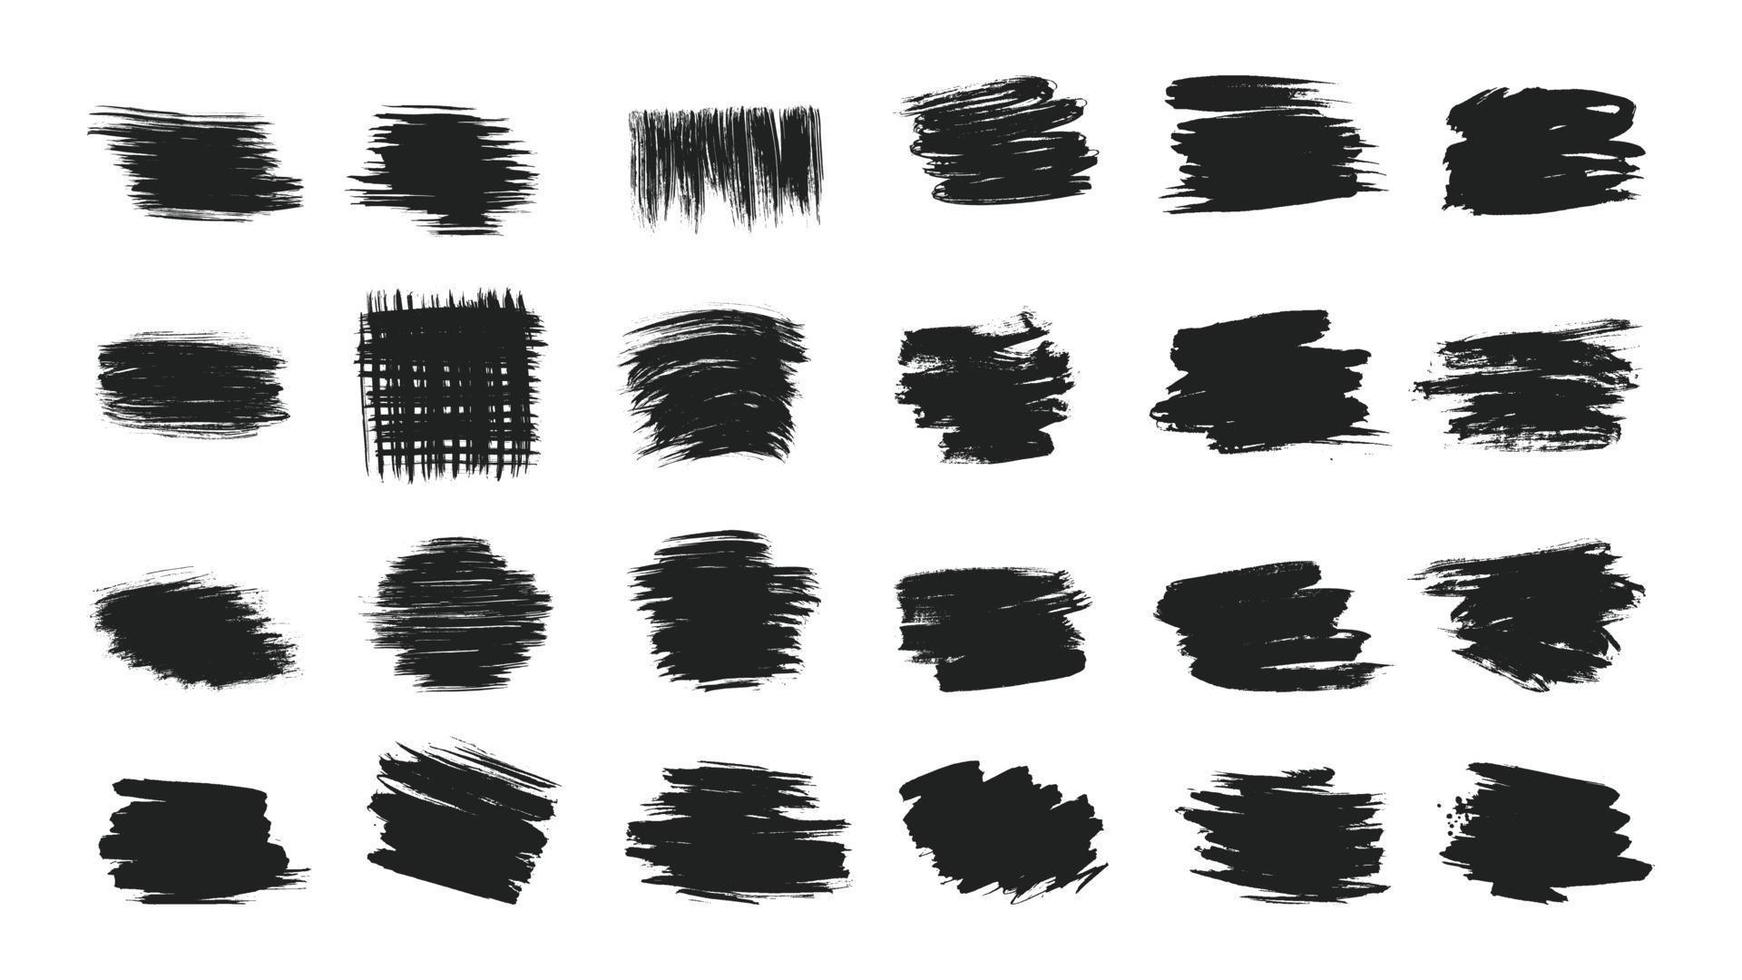 grote collectie van hand getrokken kalligrafie penseelstreken zwarte verf textuur instellen vectorillustratie geïsoleerd op een witte achtergrond. kalligrafie borstels hoge detail abstracte elementen. vector